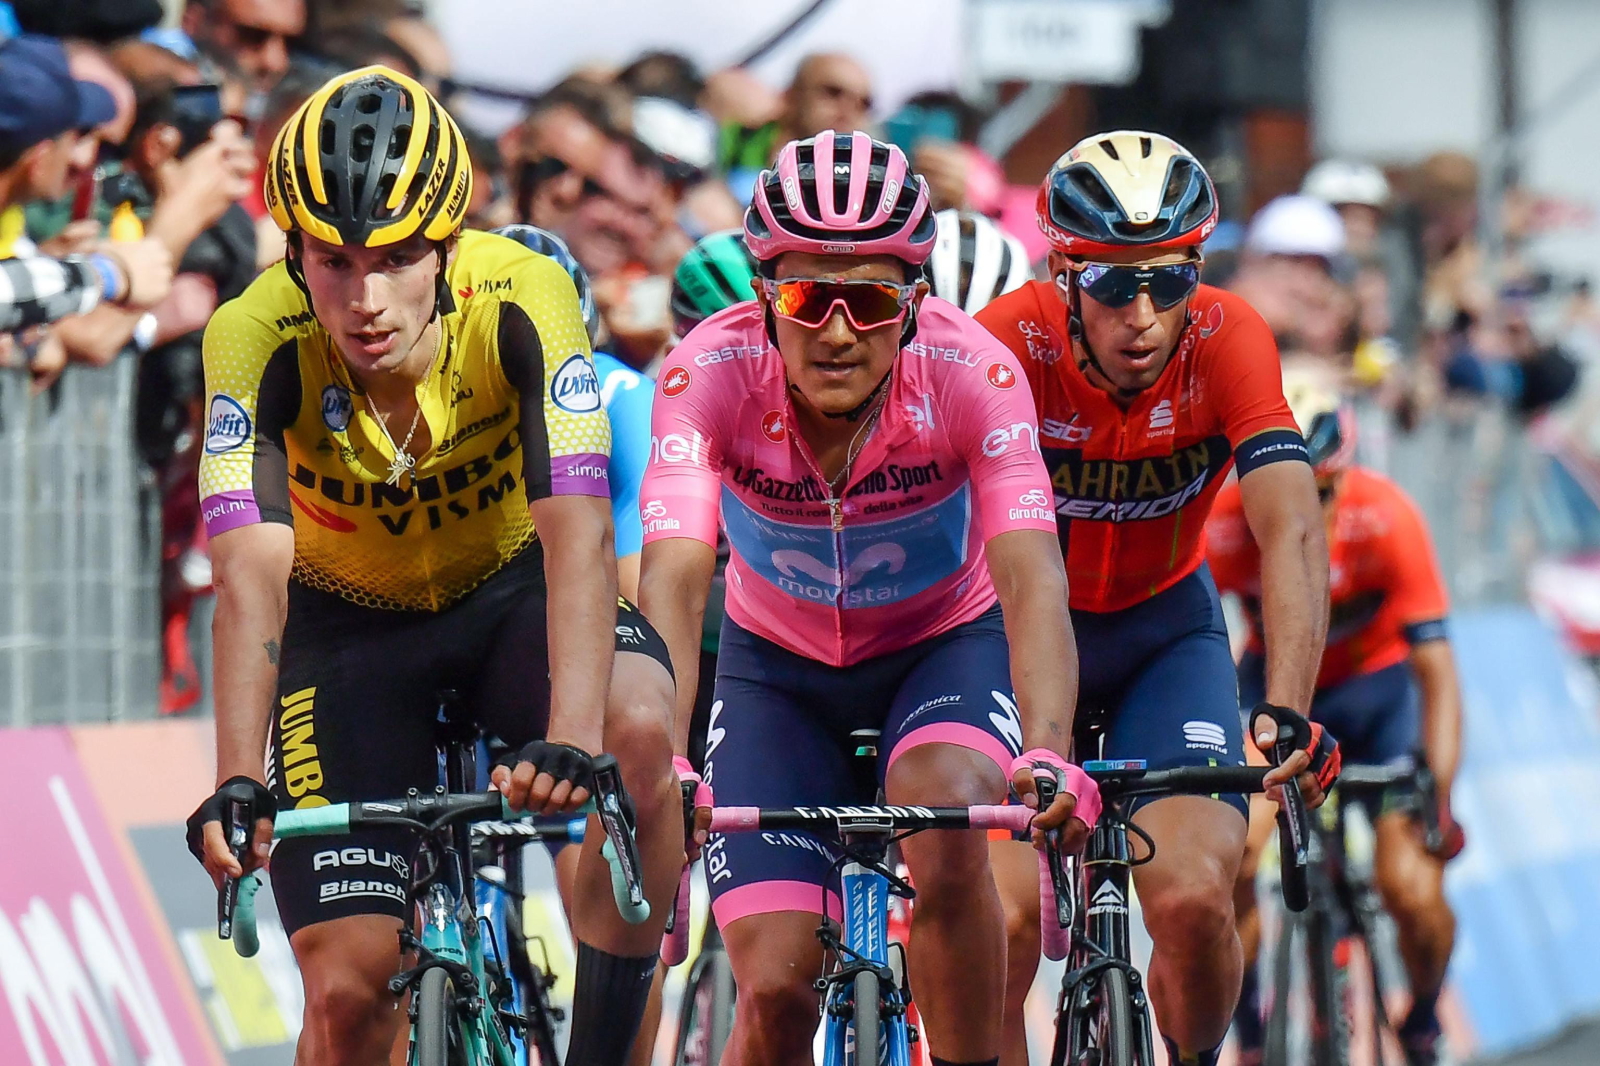 19 etap Giro d'Italia. Fot. PAP/EPA/ALESSANDRO DI MEO